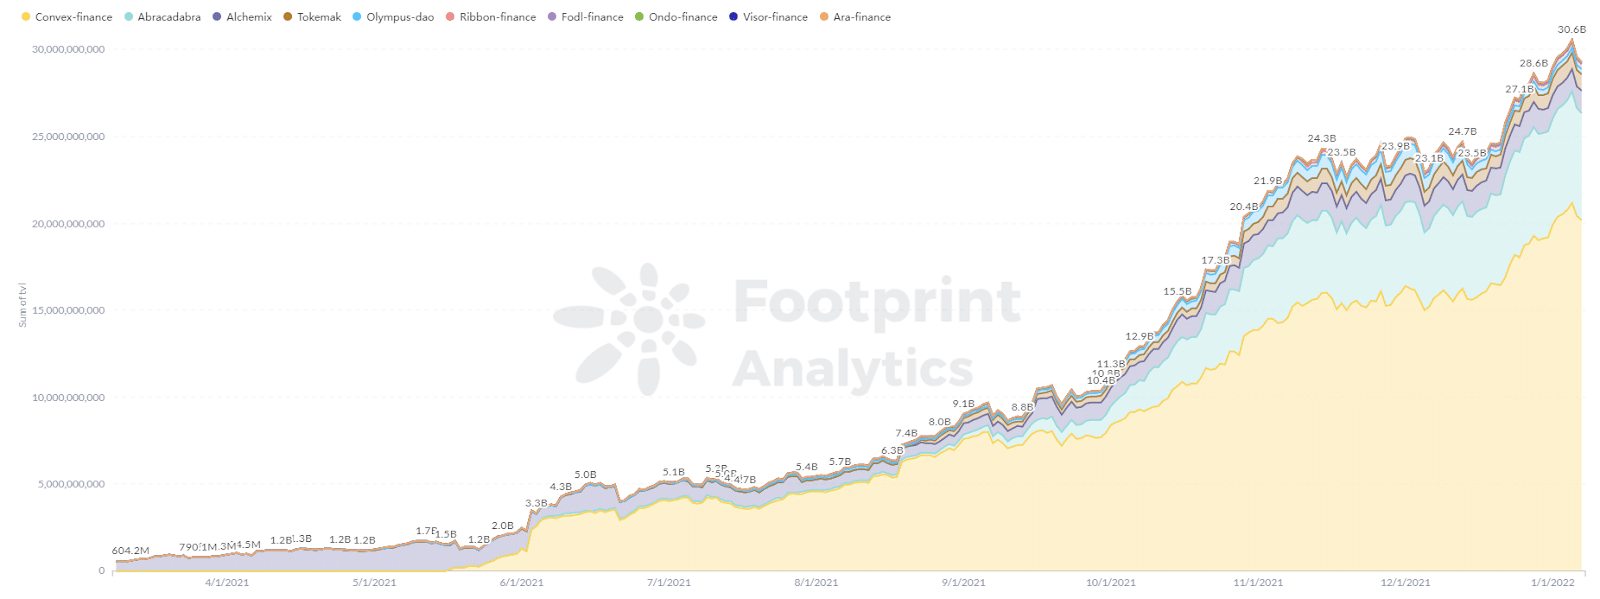 Footprint Analytics - TVL на проектите DeFi 2.0 скочи от 0 до 30 милиарда през 2021 г.